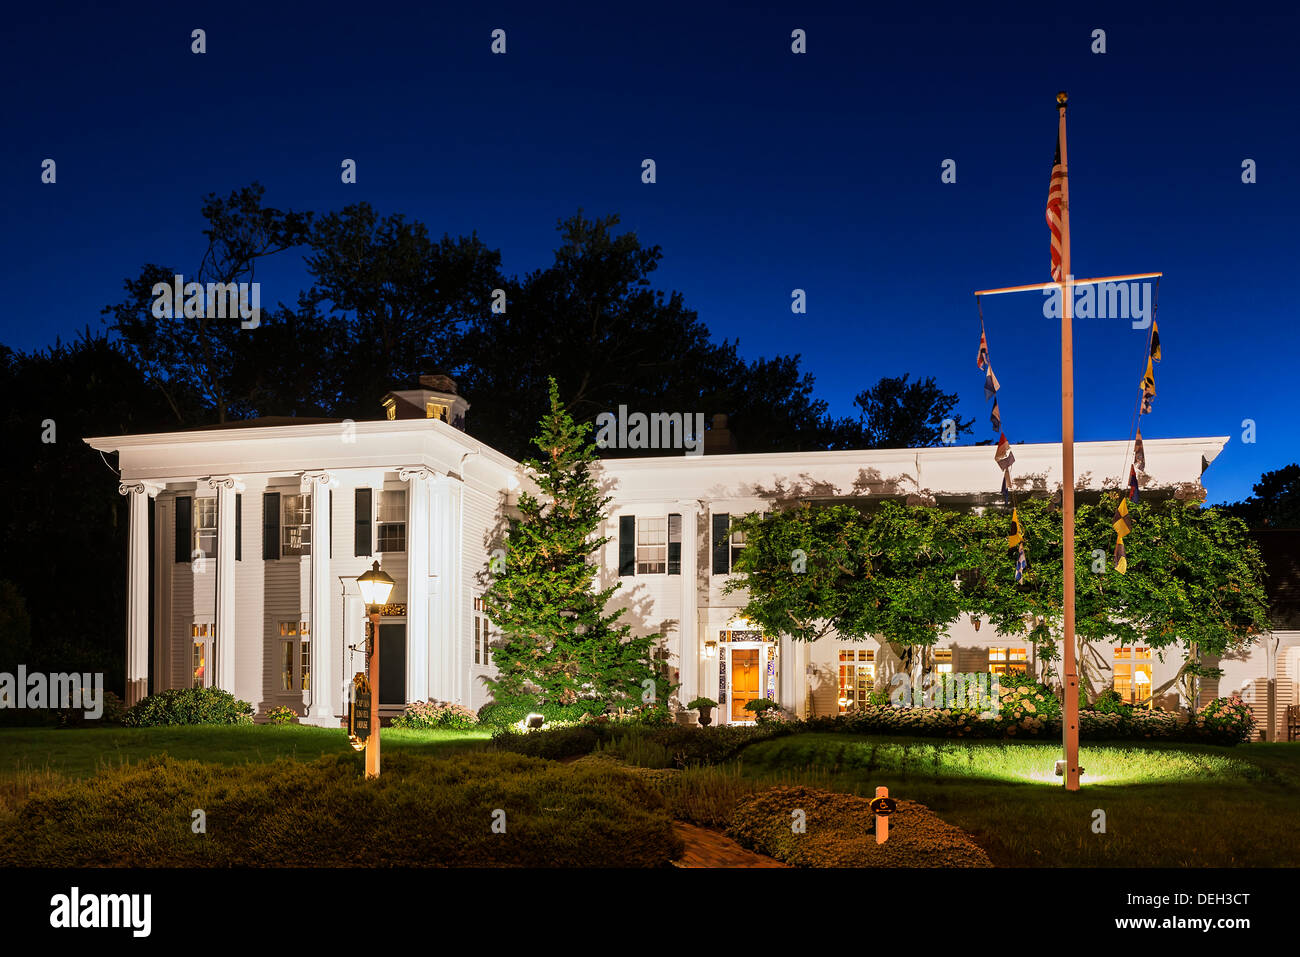 Popular Captain Linnell House restaurant, Orleans, Cape Cod, Massachusetts, USA Stock Photo